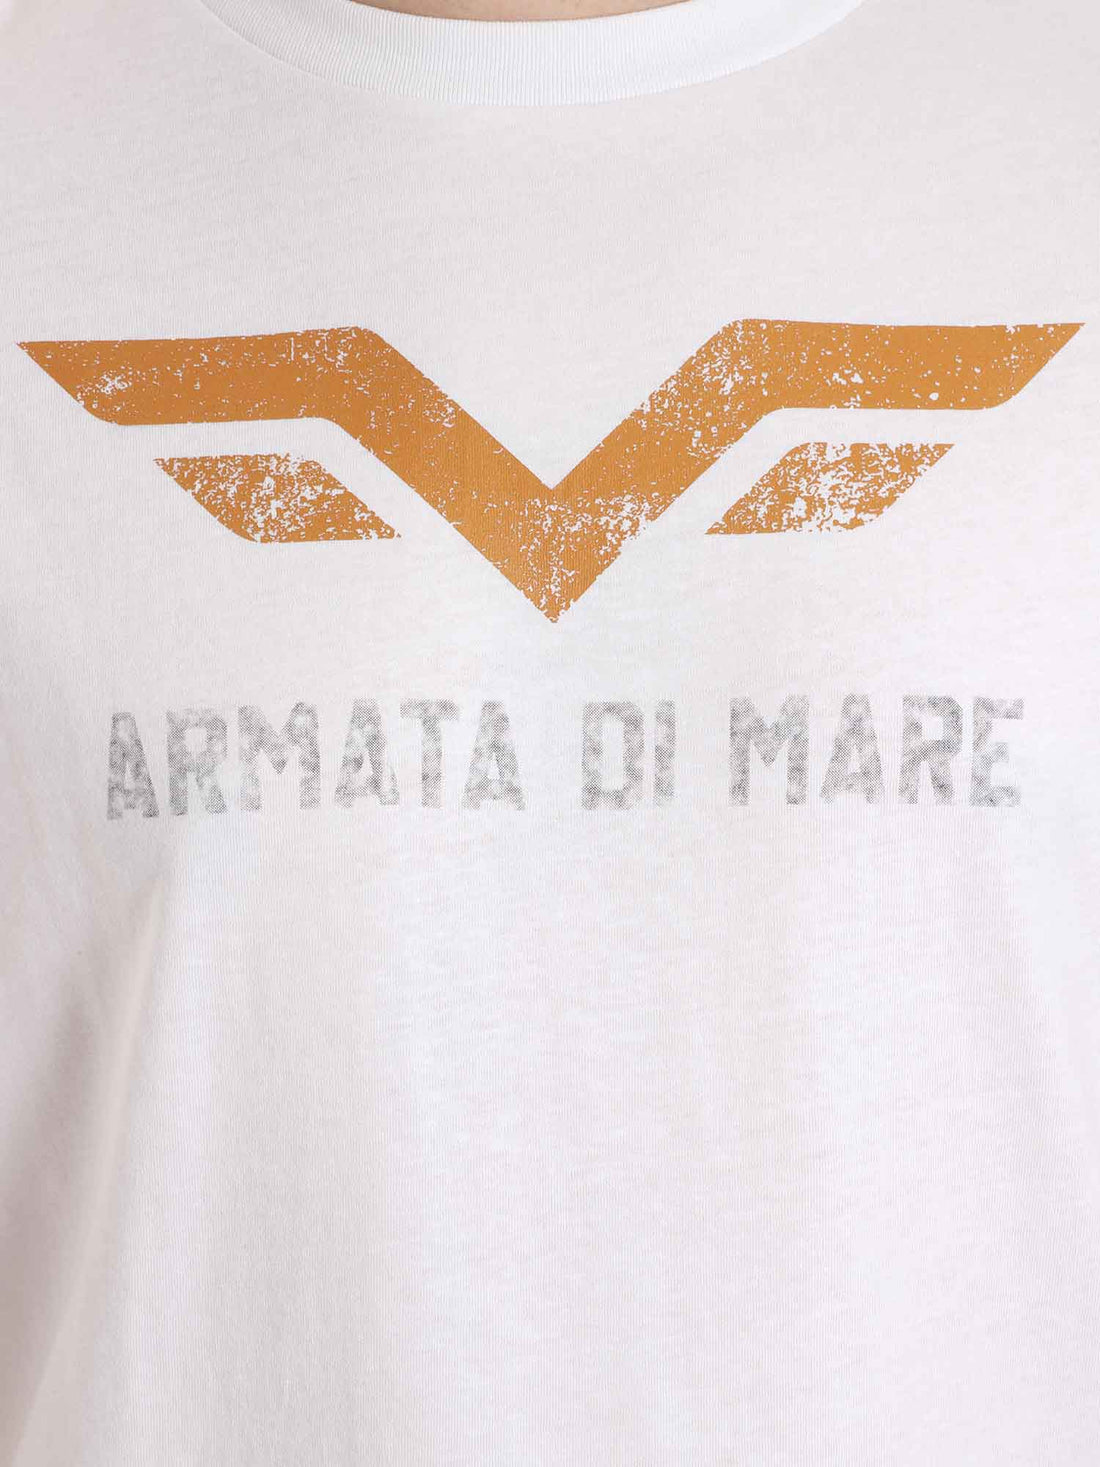 T-shirt Bianco Armata Di Mare